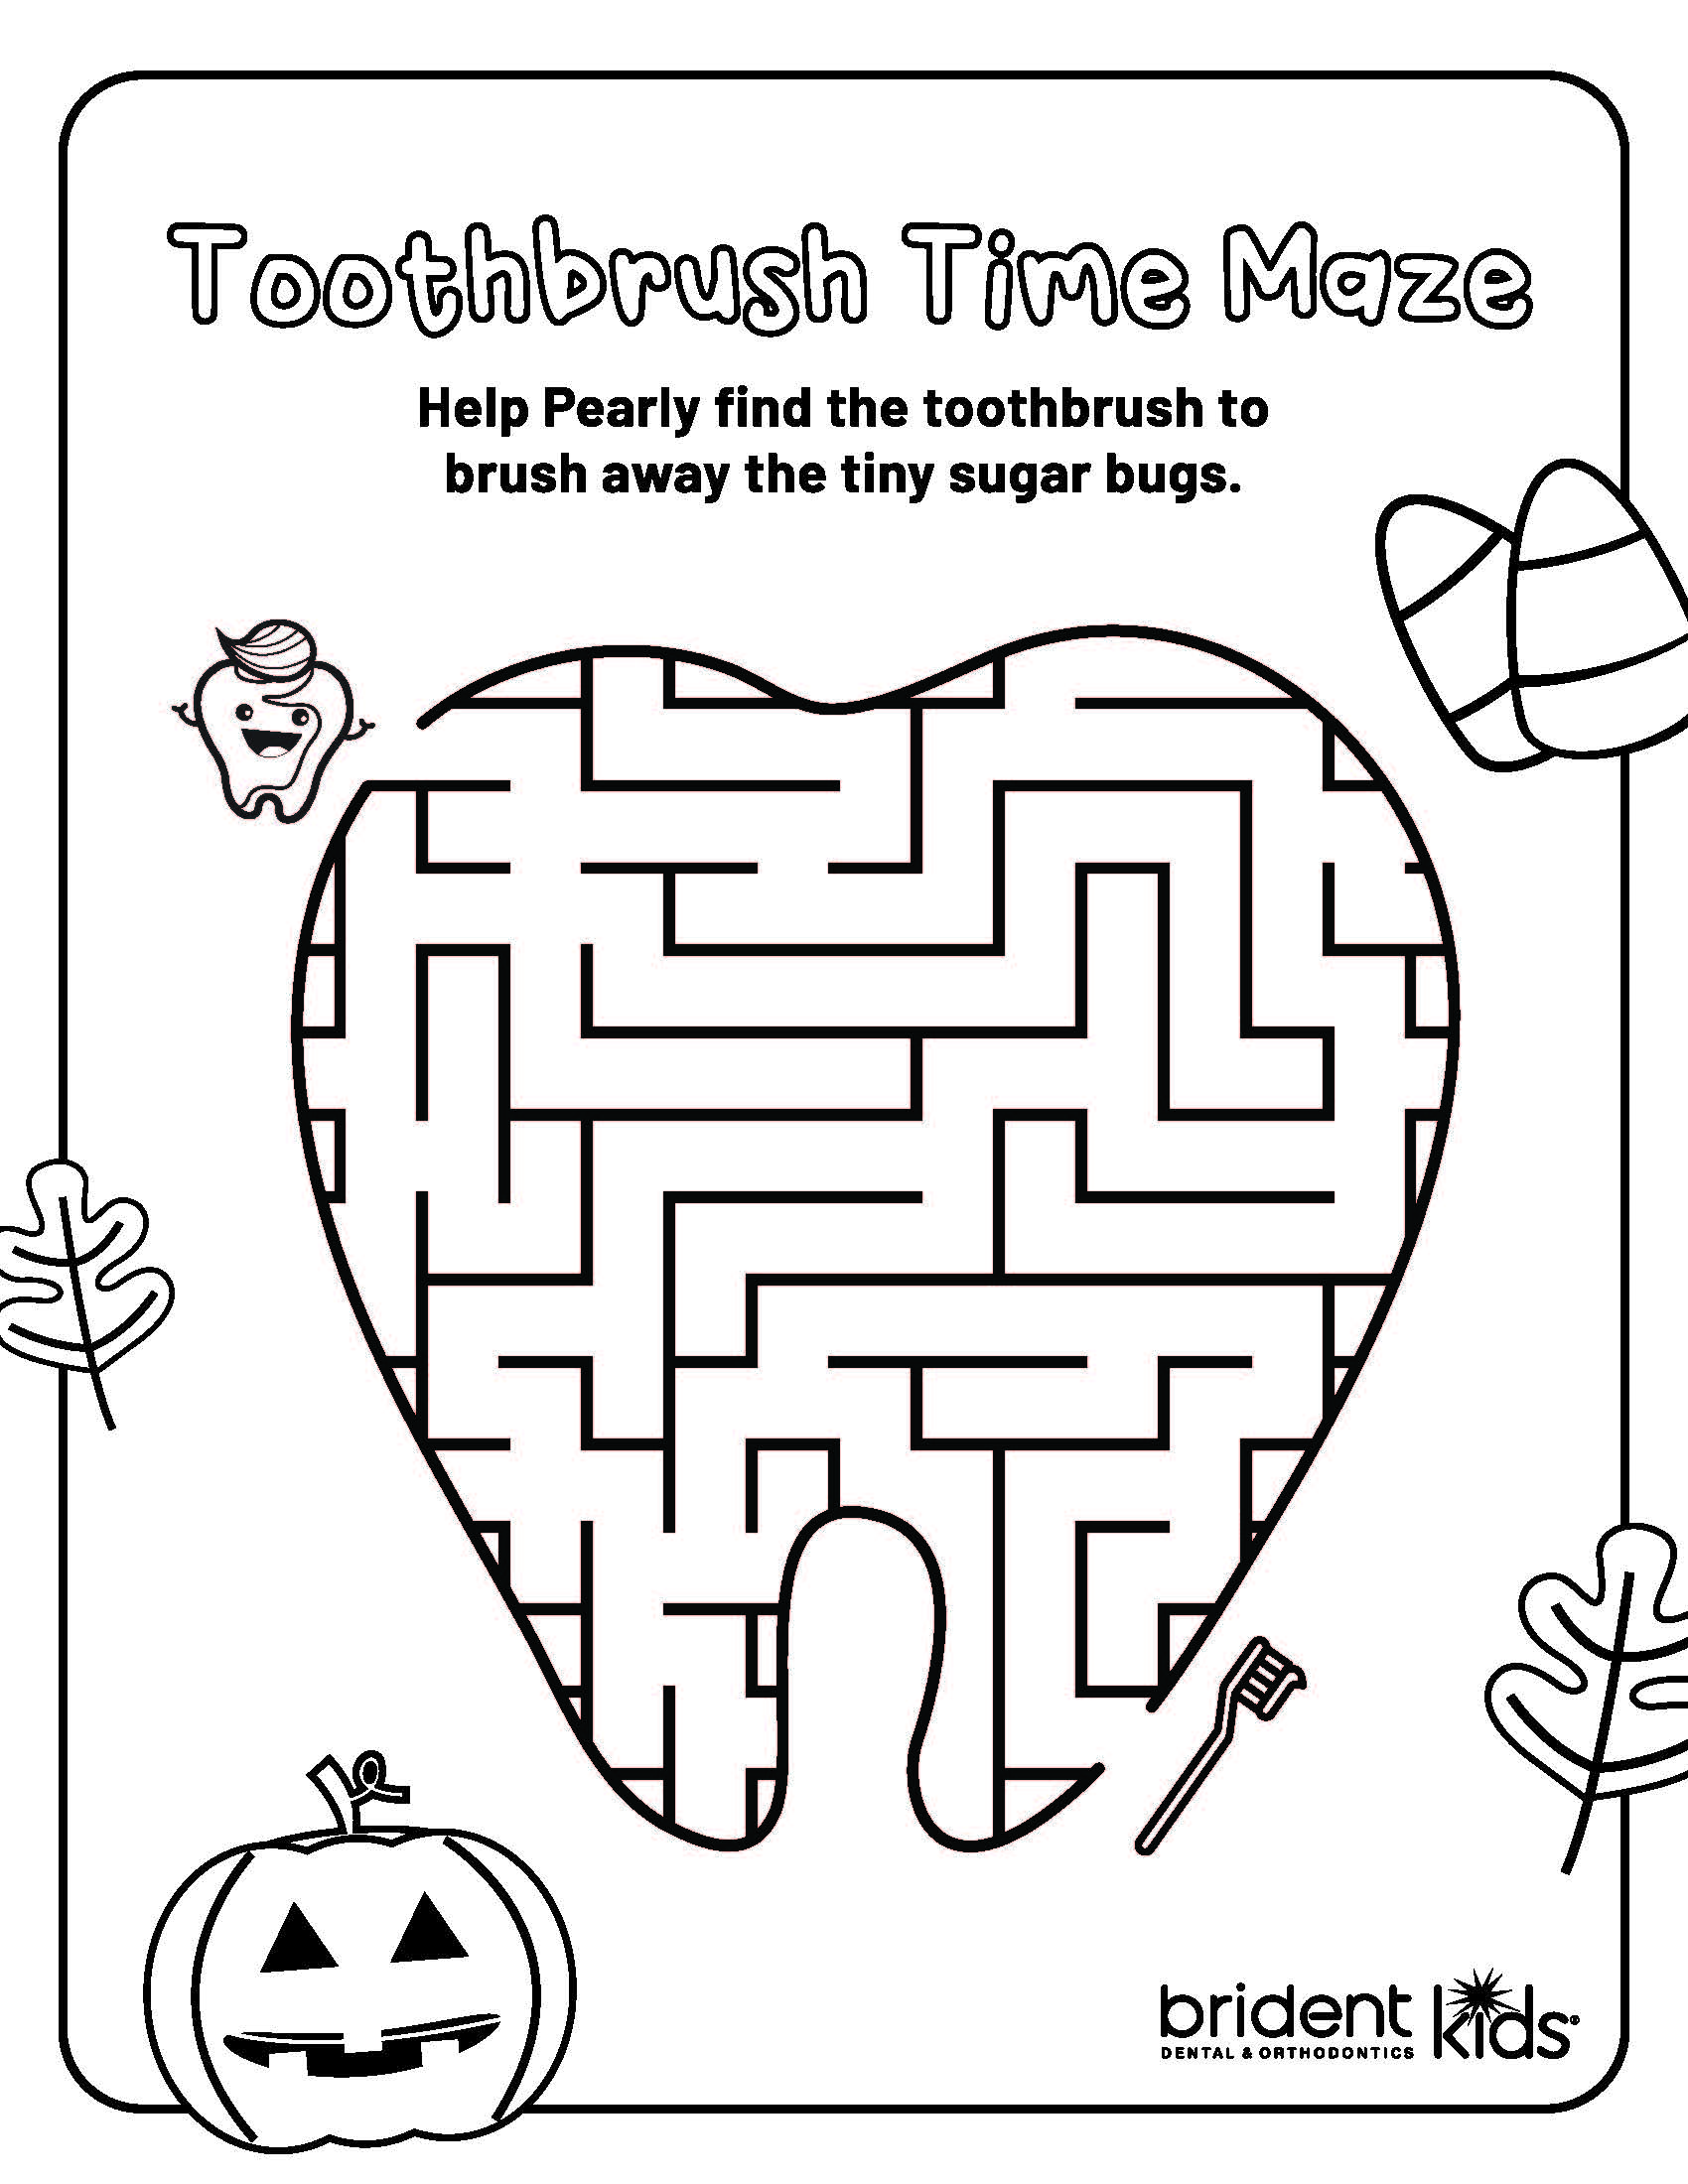 Brident Dental Kid's - Tooth Maze